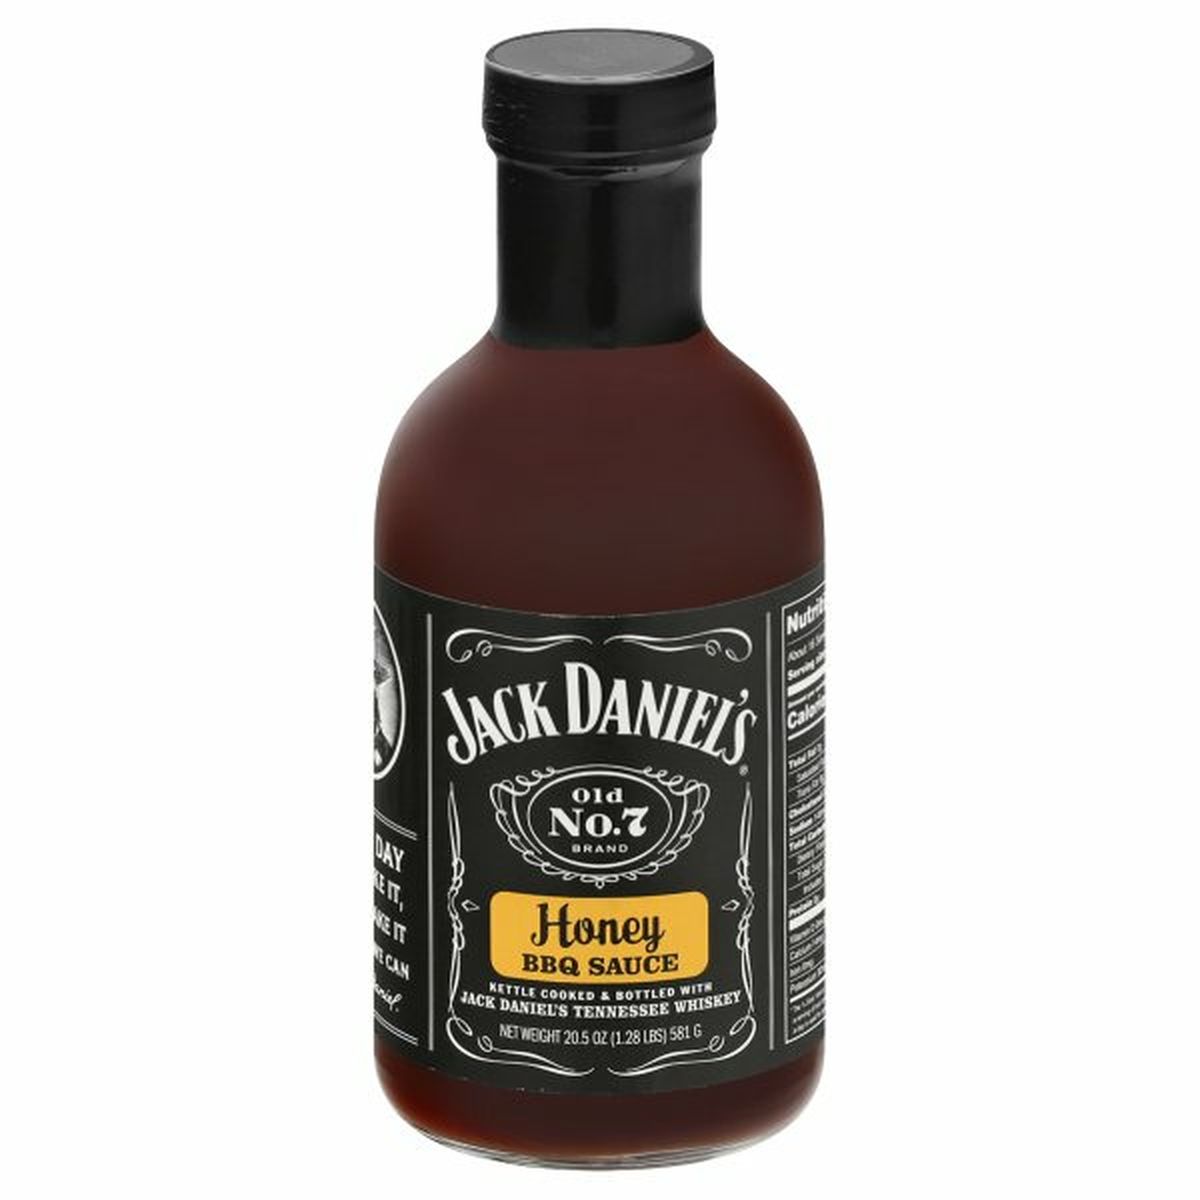 Calories in Jack Daniel's BBQ Sauce, Honey